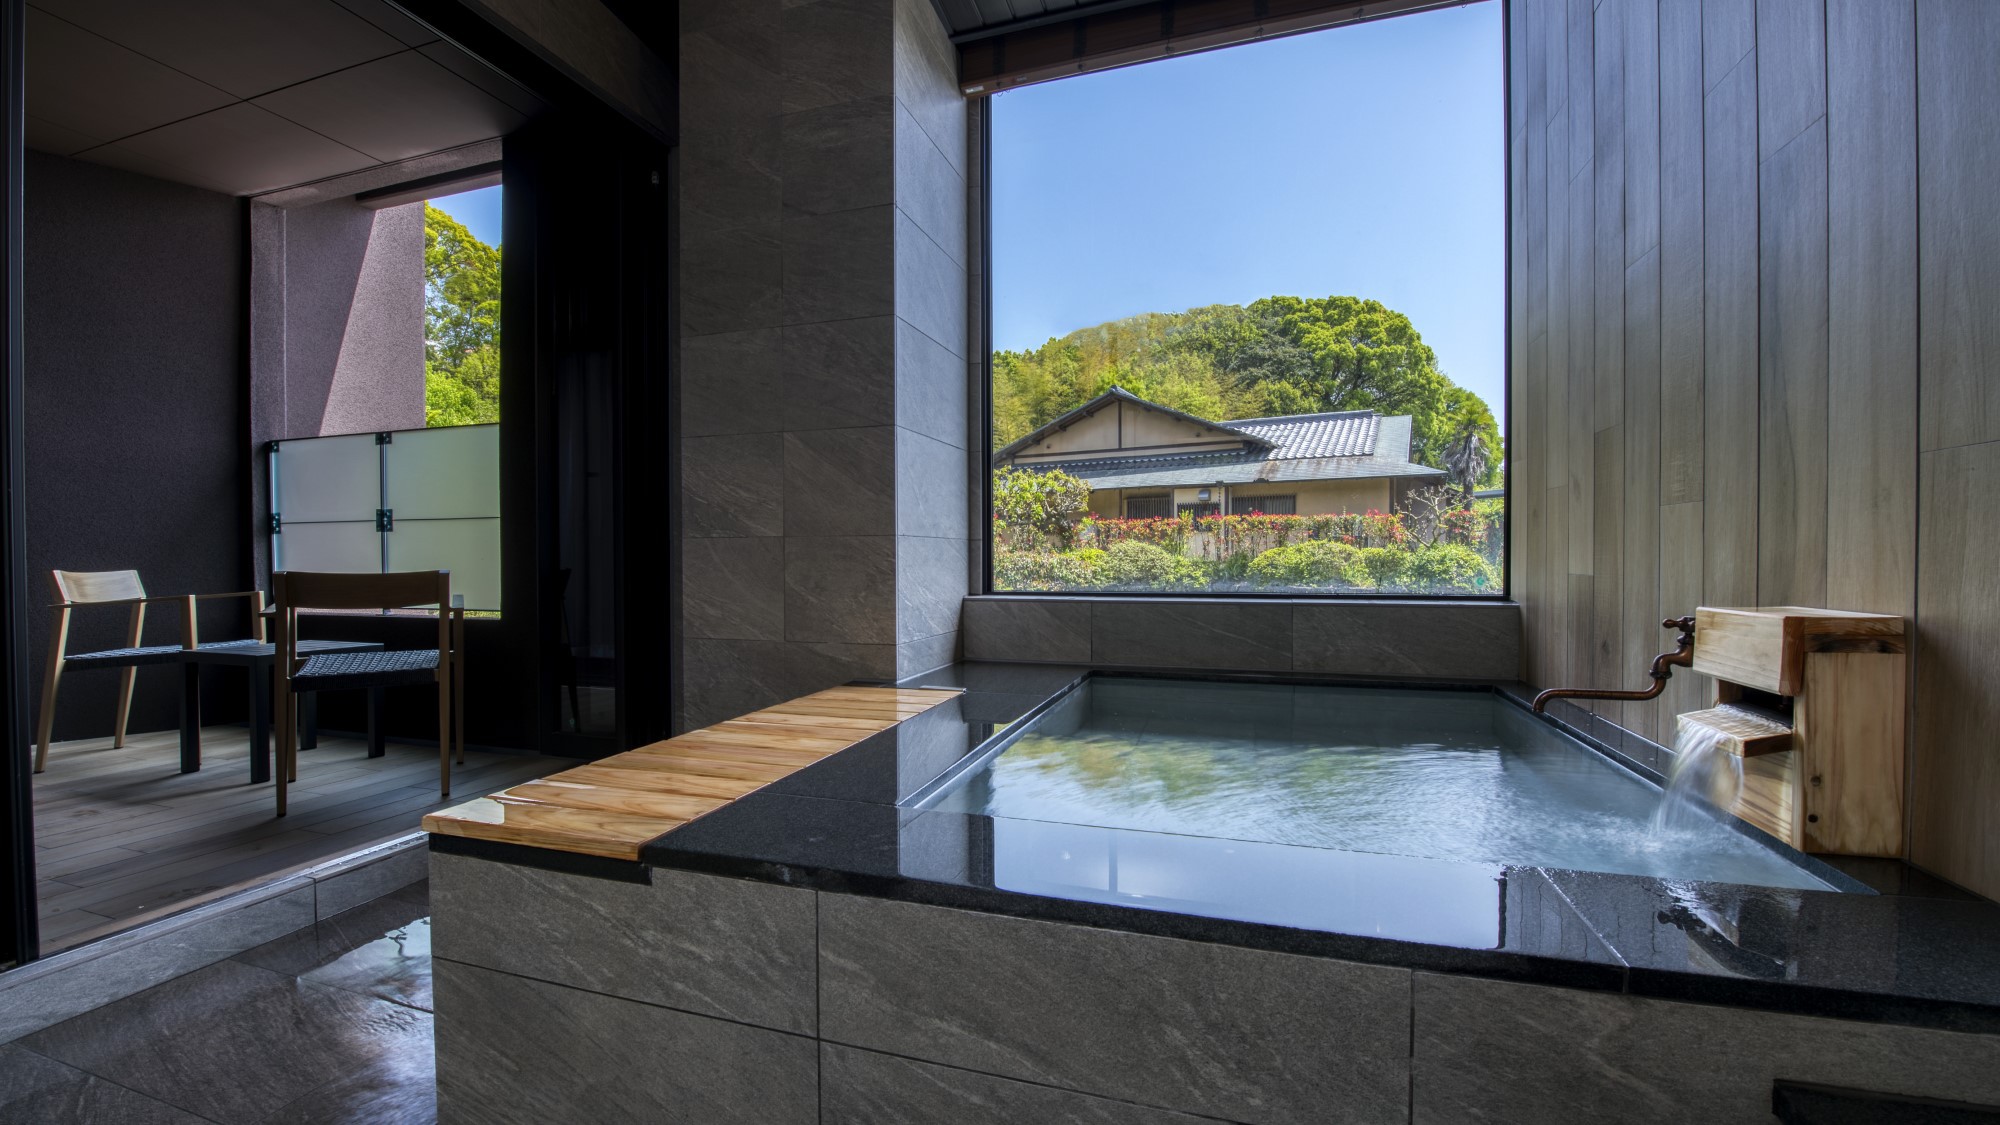 洋モダン〜Executive Type〜天然岩で作られた半露天風呂で源泉掛け流し温泉を満喫。